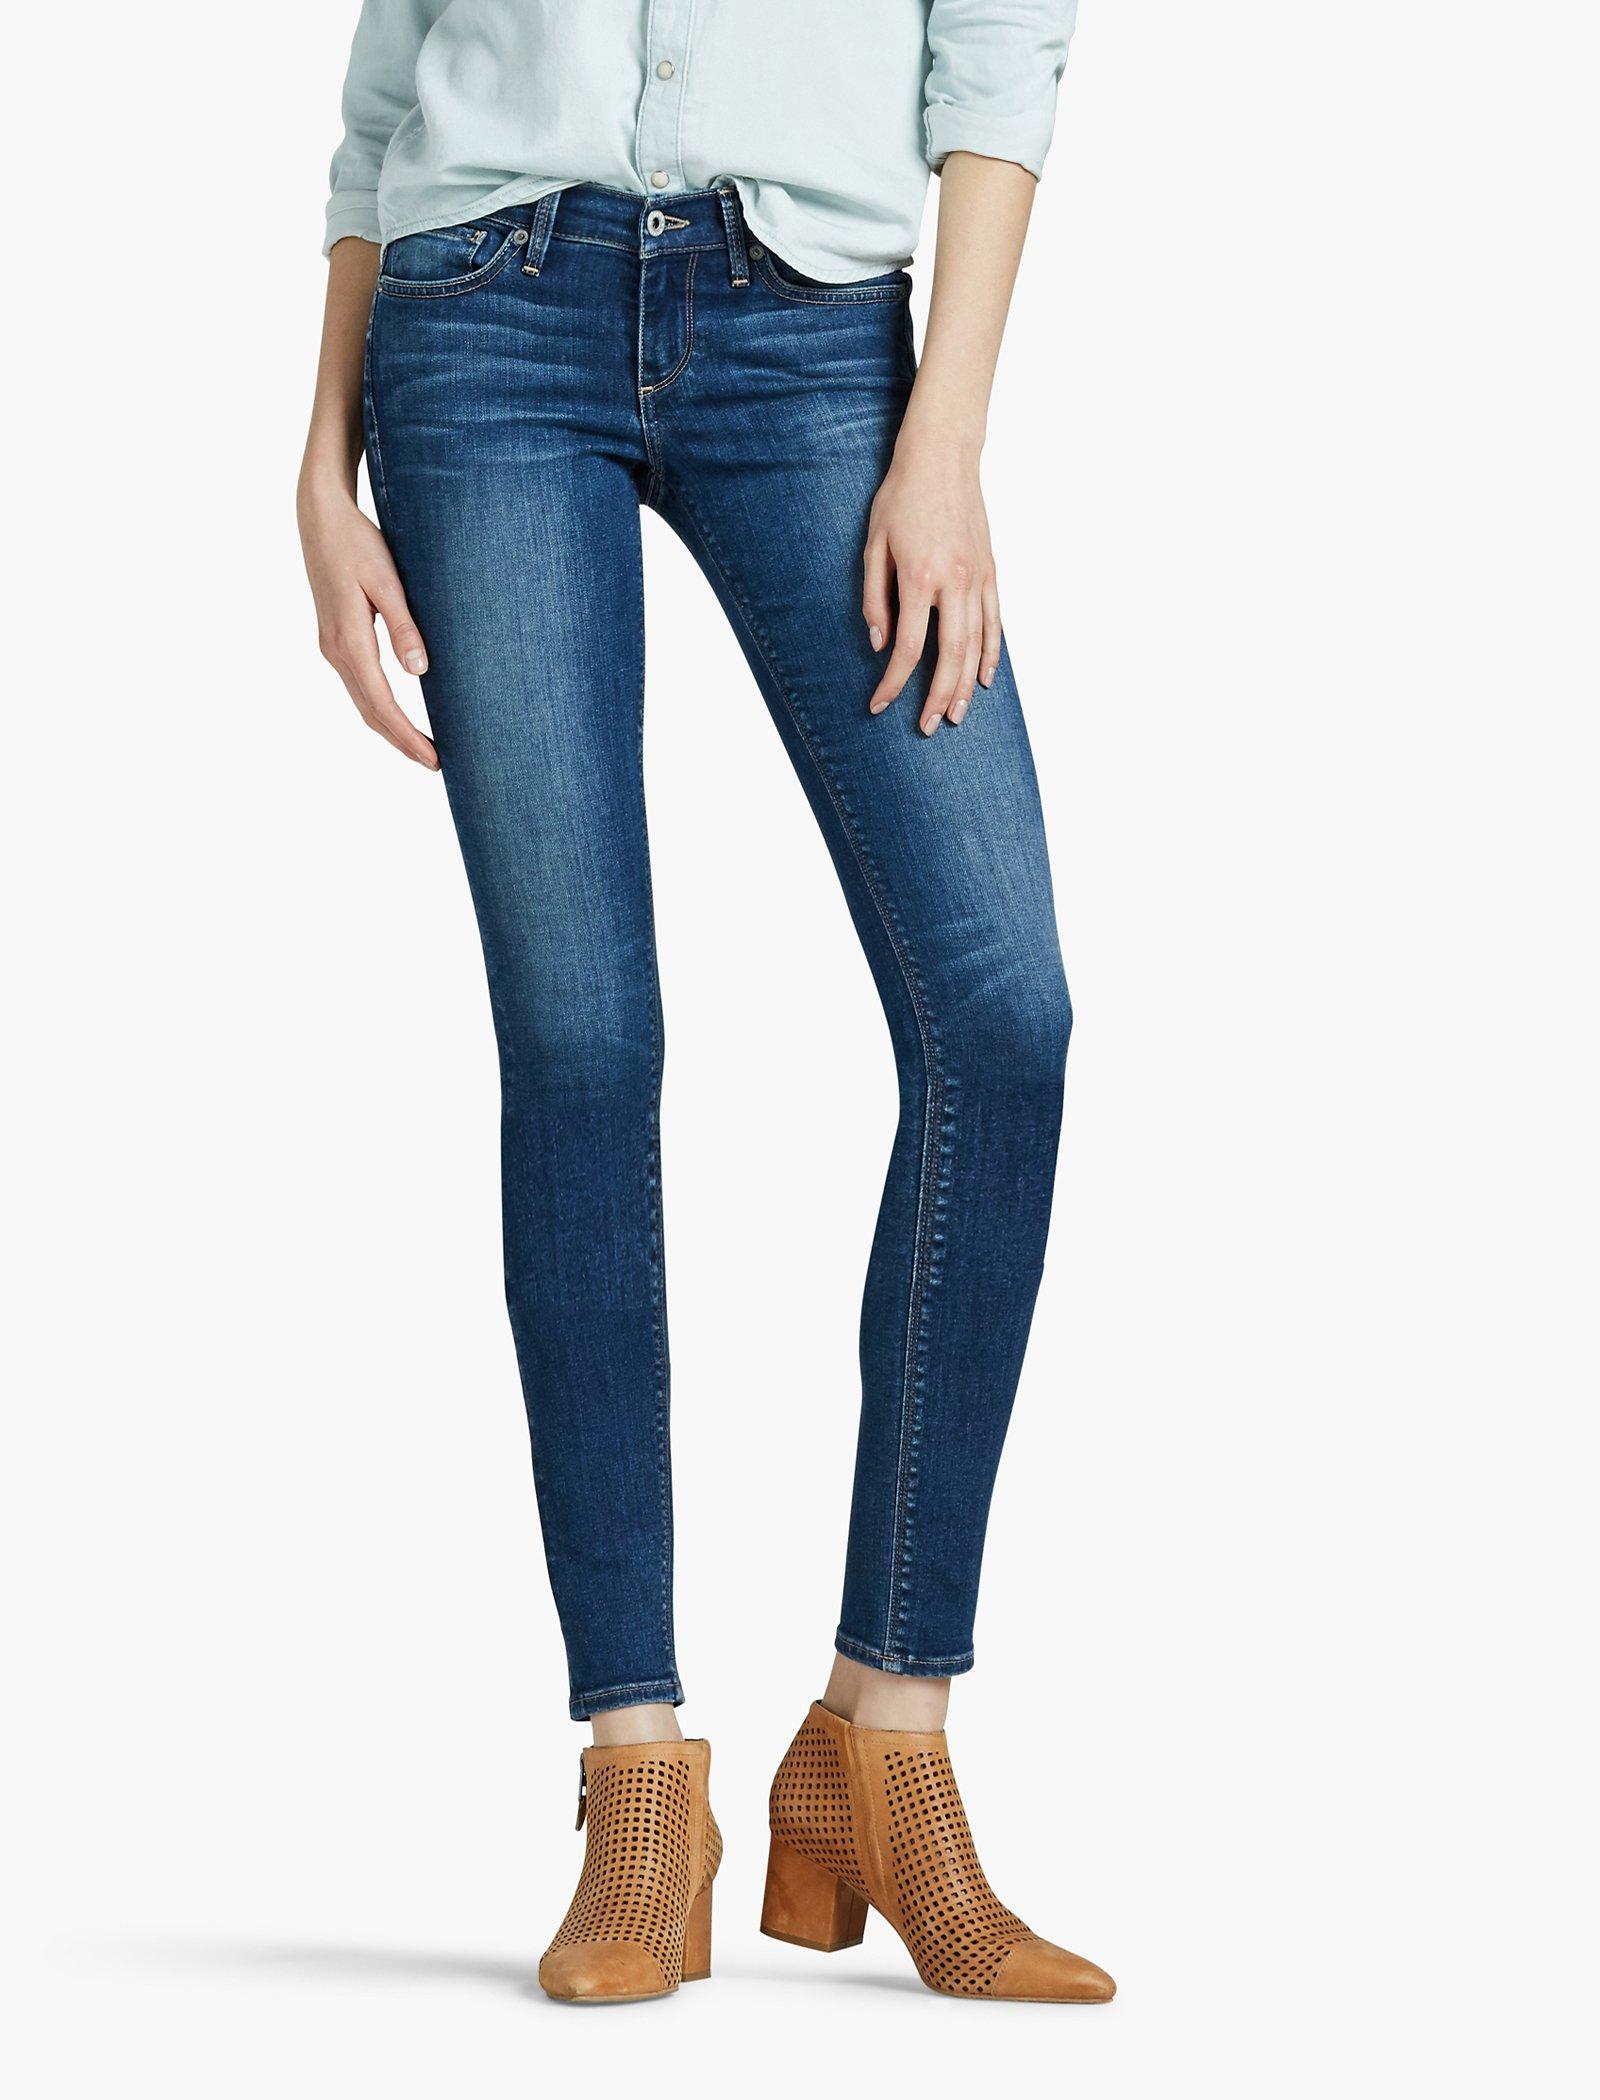 women's plus size fleece lined jeans